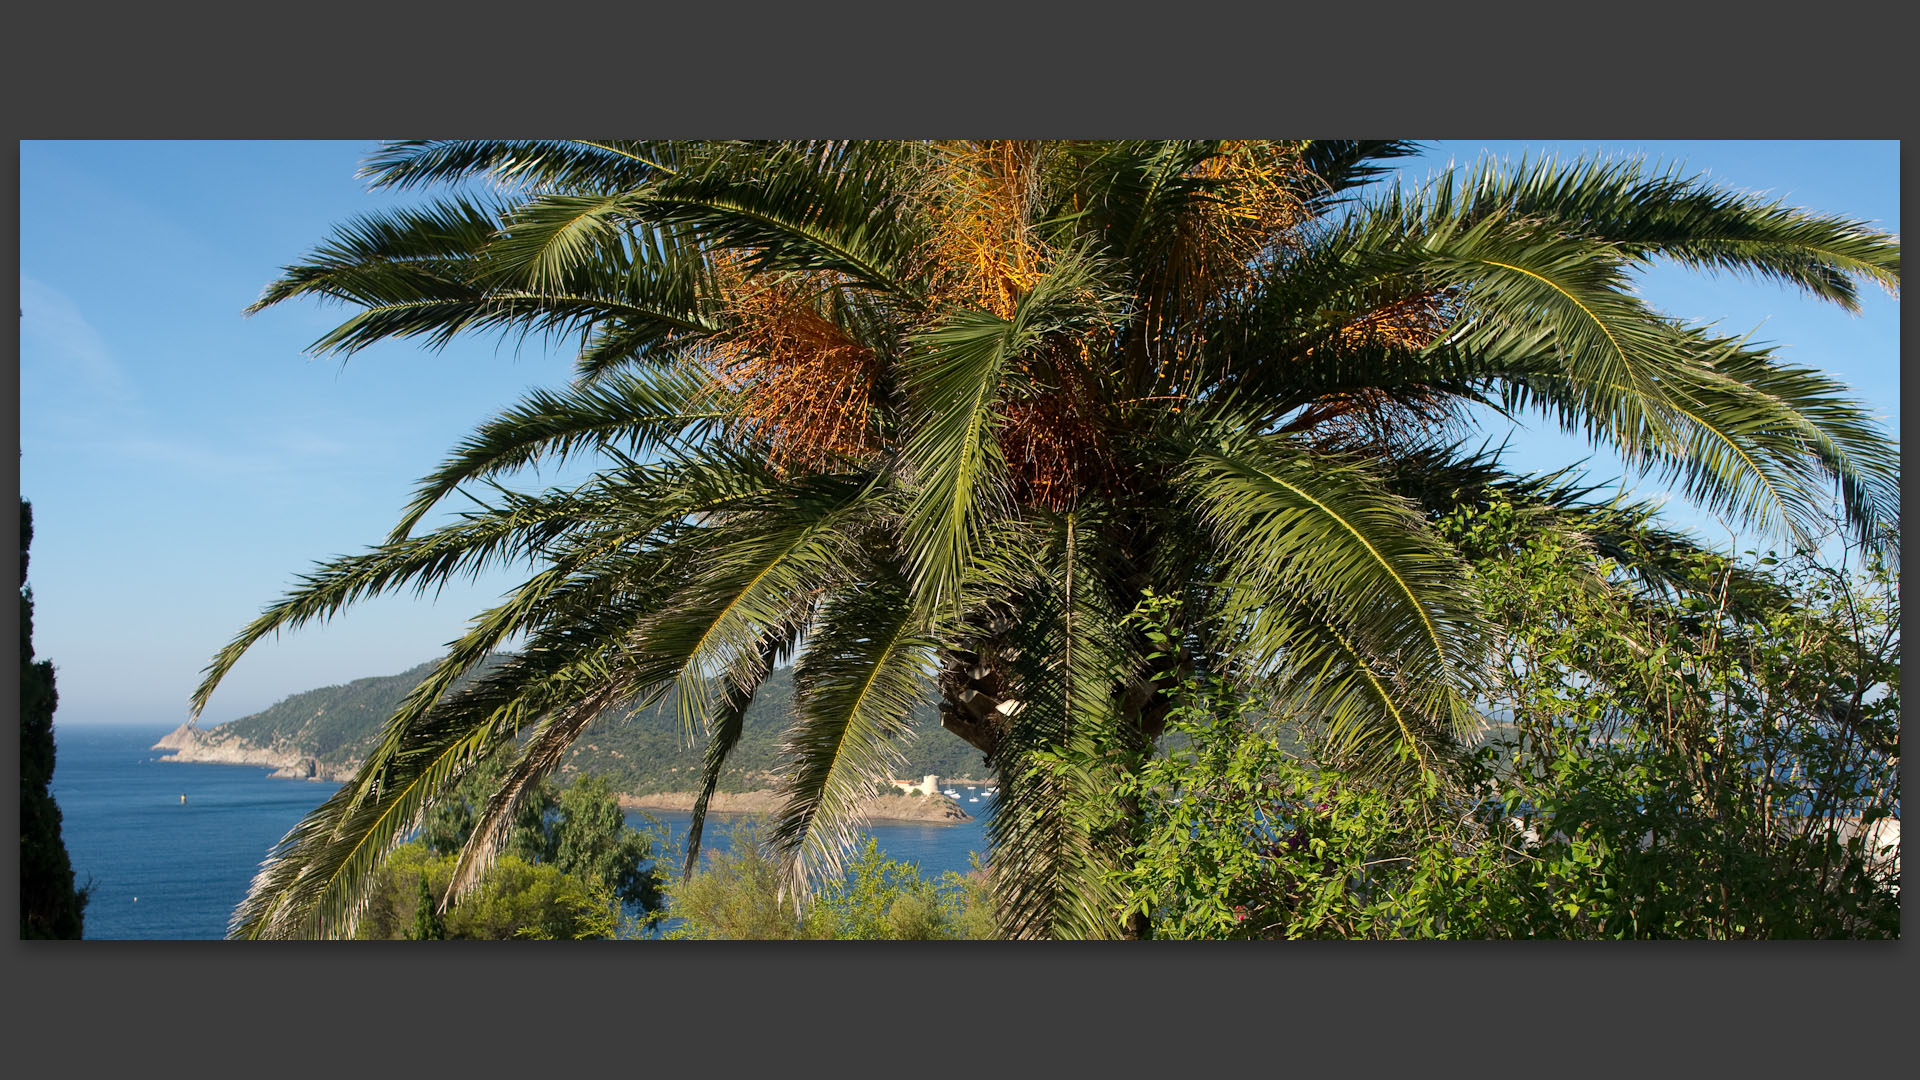 Le fort de Port Man vu derrière un palmier à l'île du Levant.